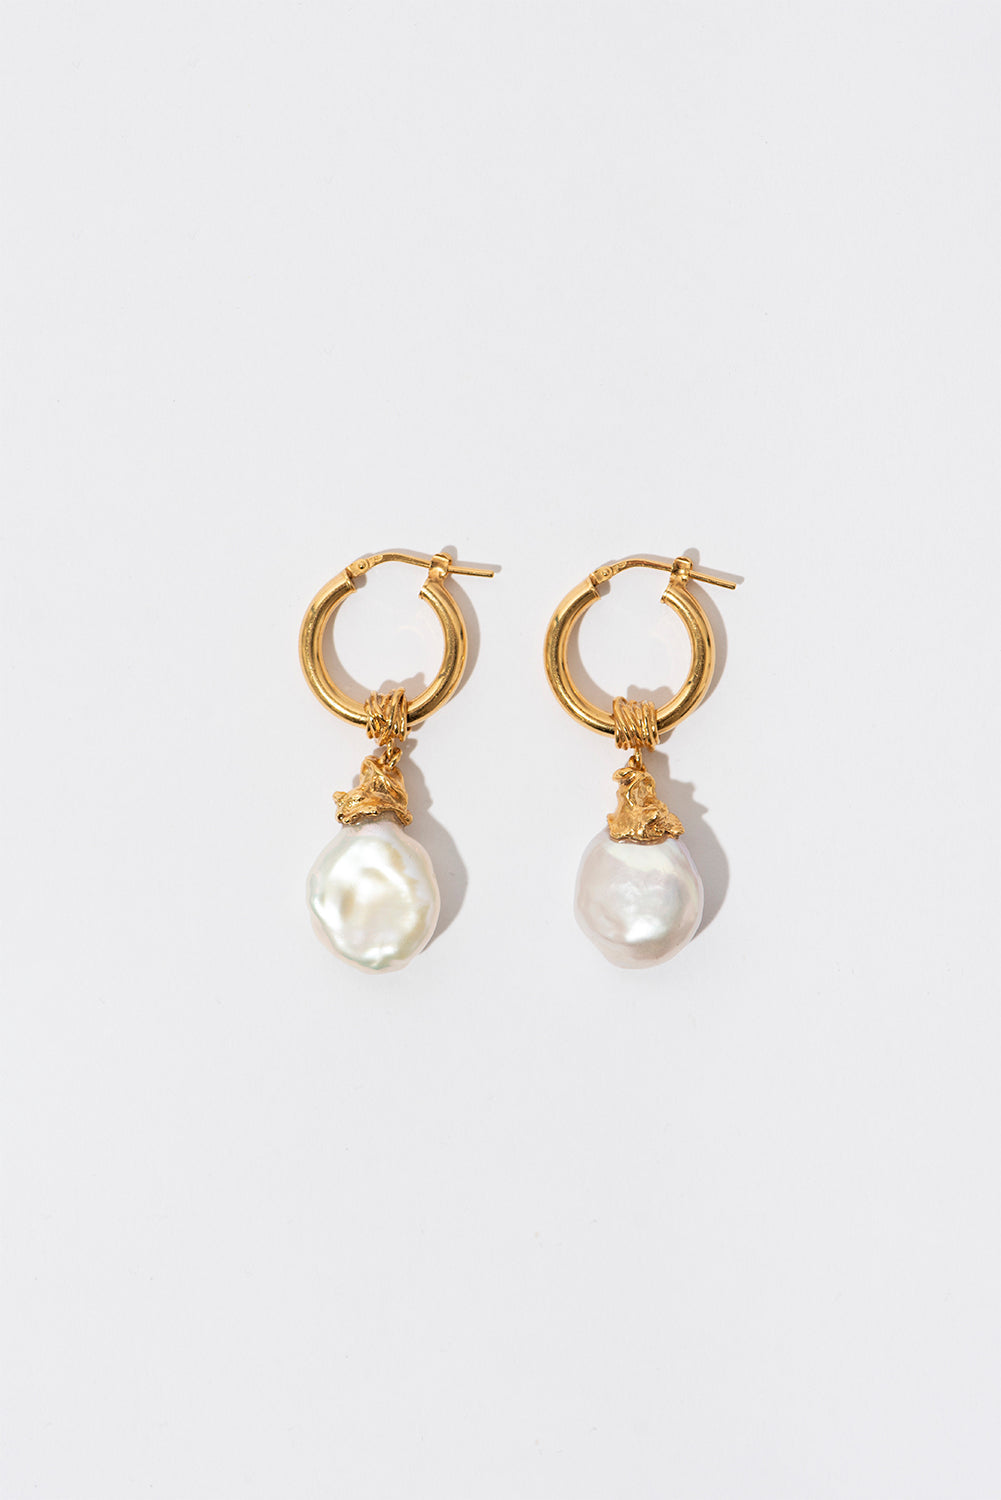 Les Mères Everyday Pearl Earrings